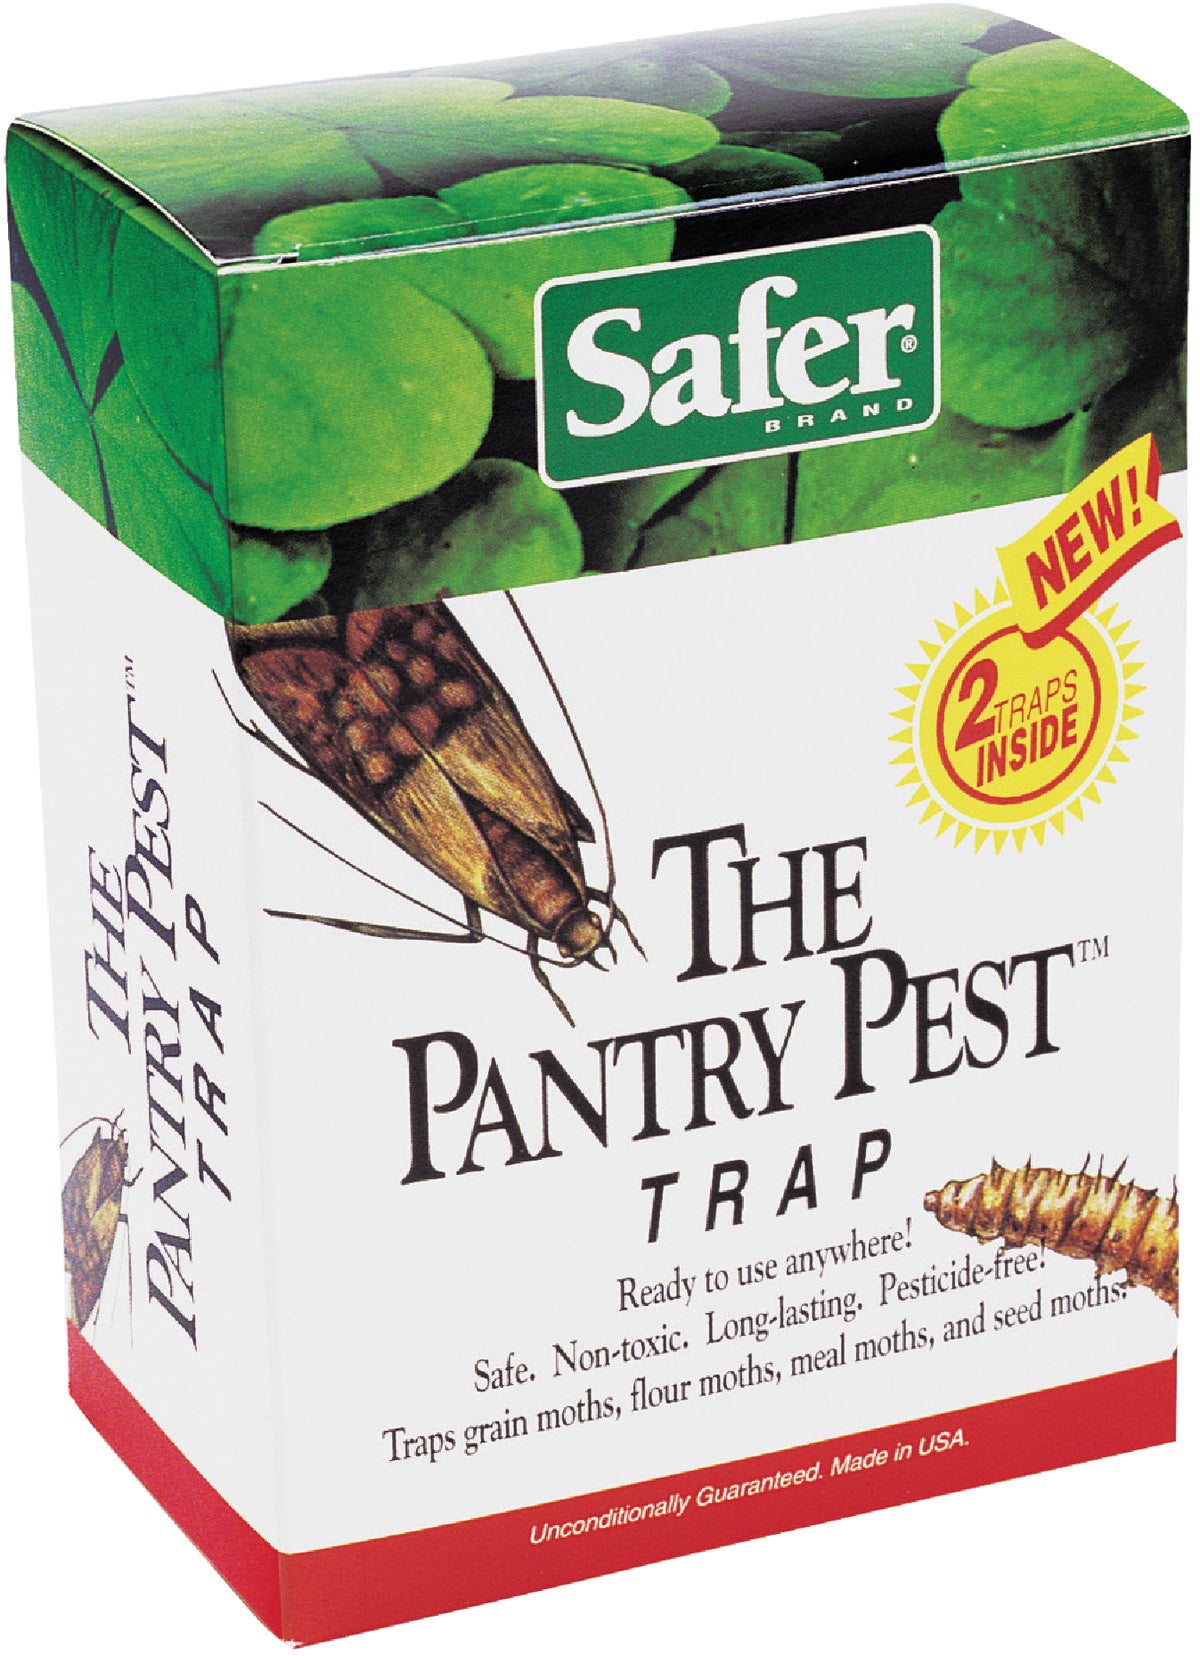 Pest No More Flour and Pantry Moth Trap